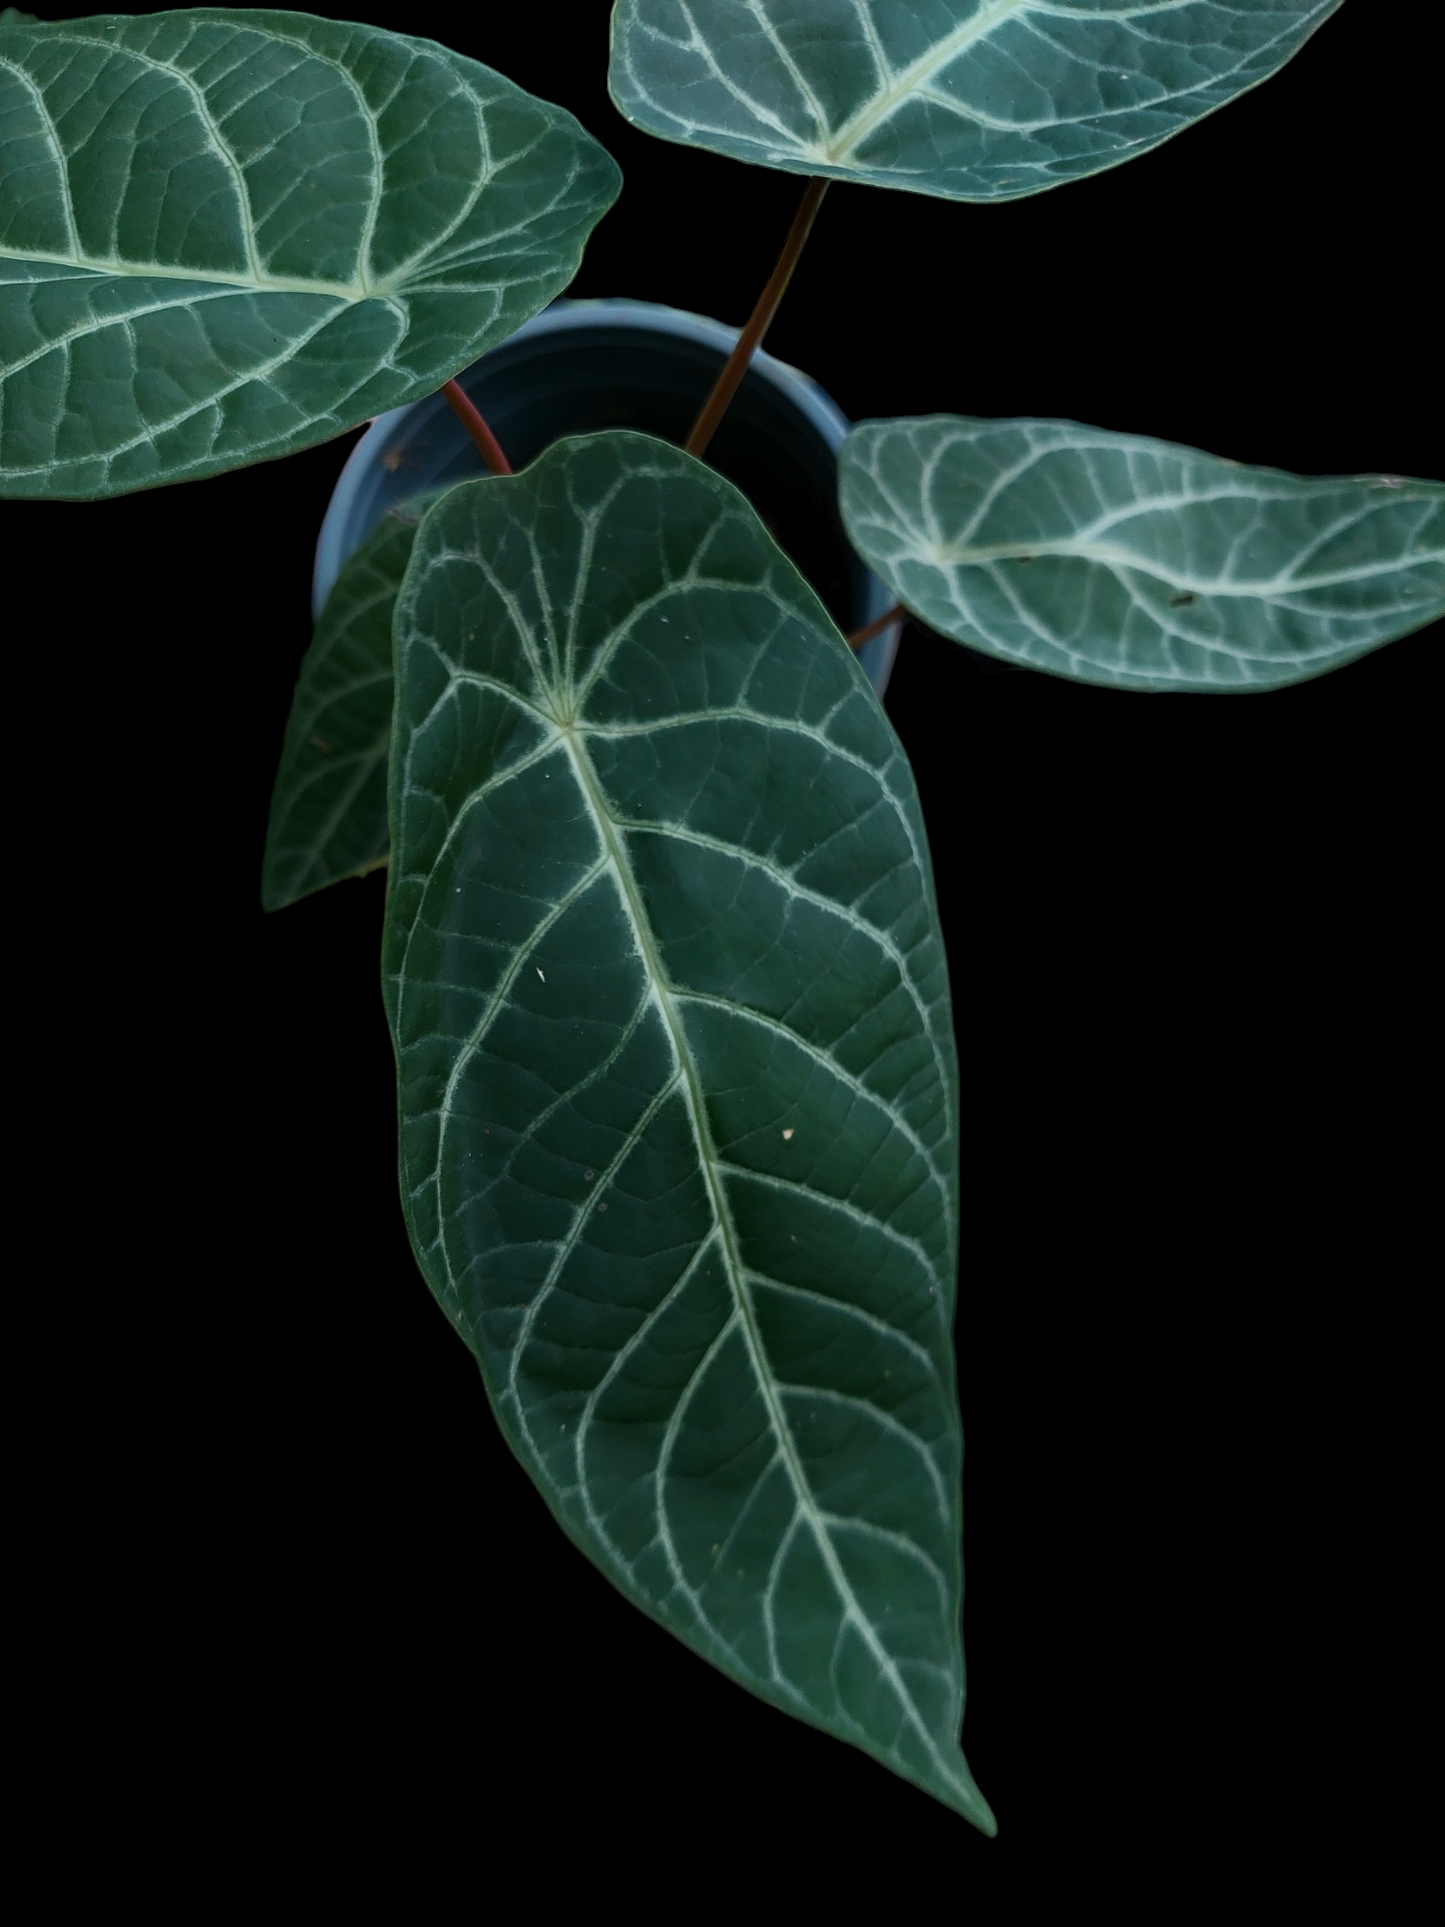 Piper Albert-Smithii Peru Ecotype (EXACT PLANT)